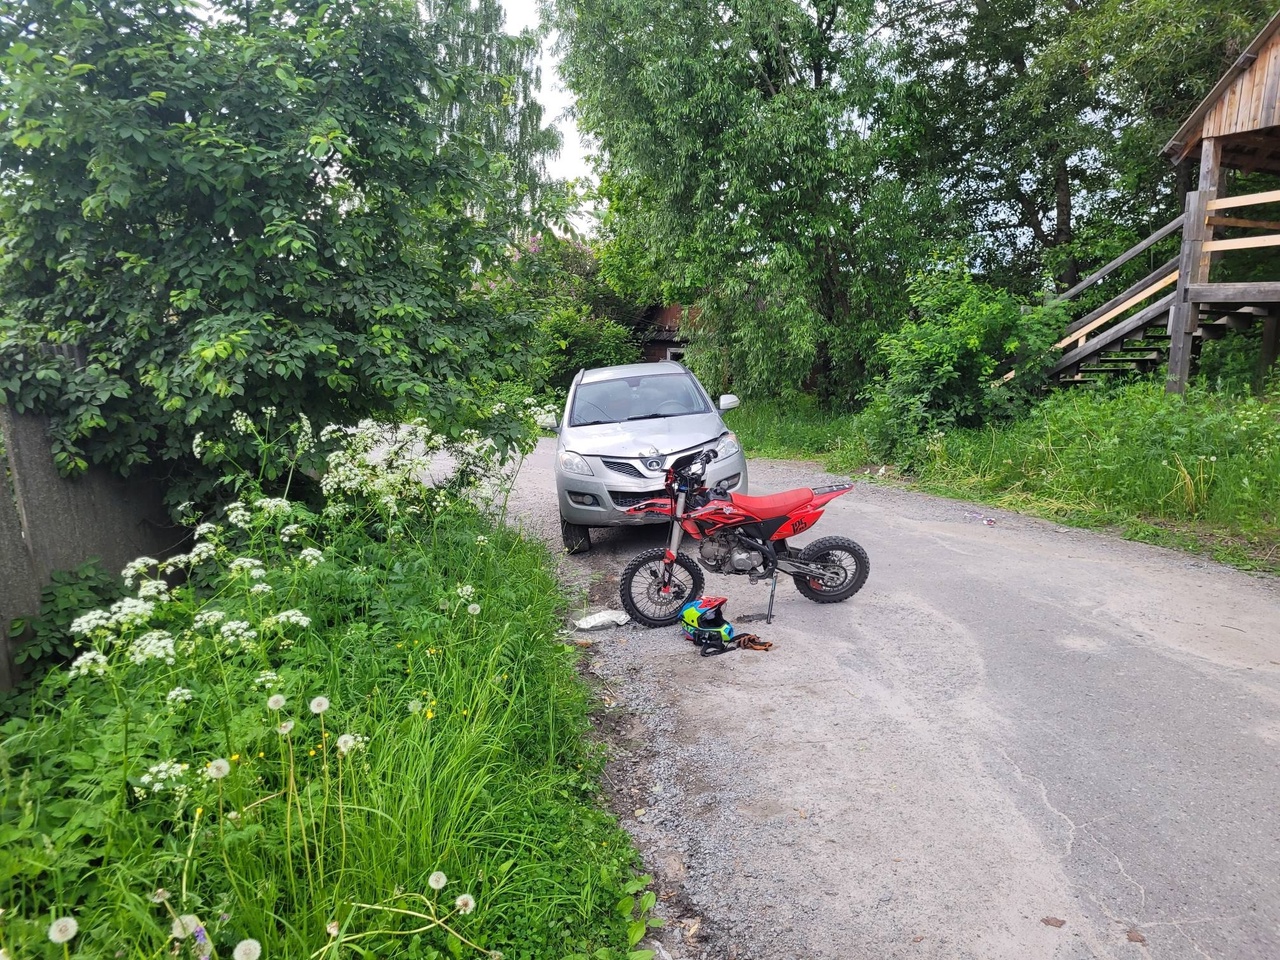 Ребенок на мотоцикле влетел в иномарку в райцентре Карелии